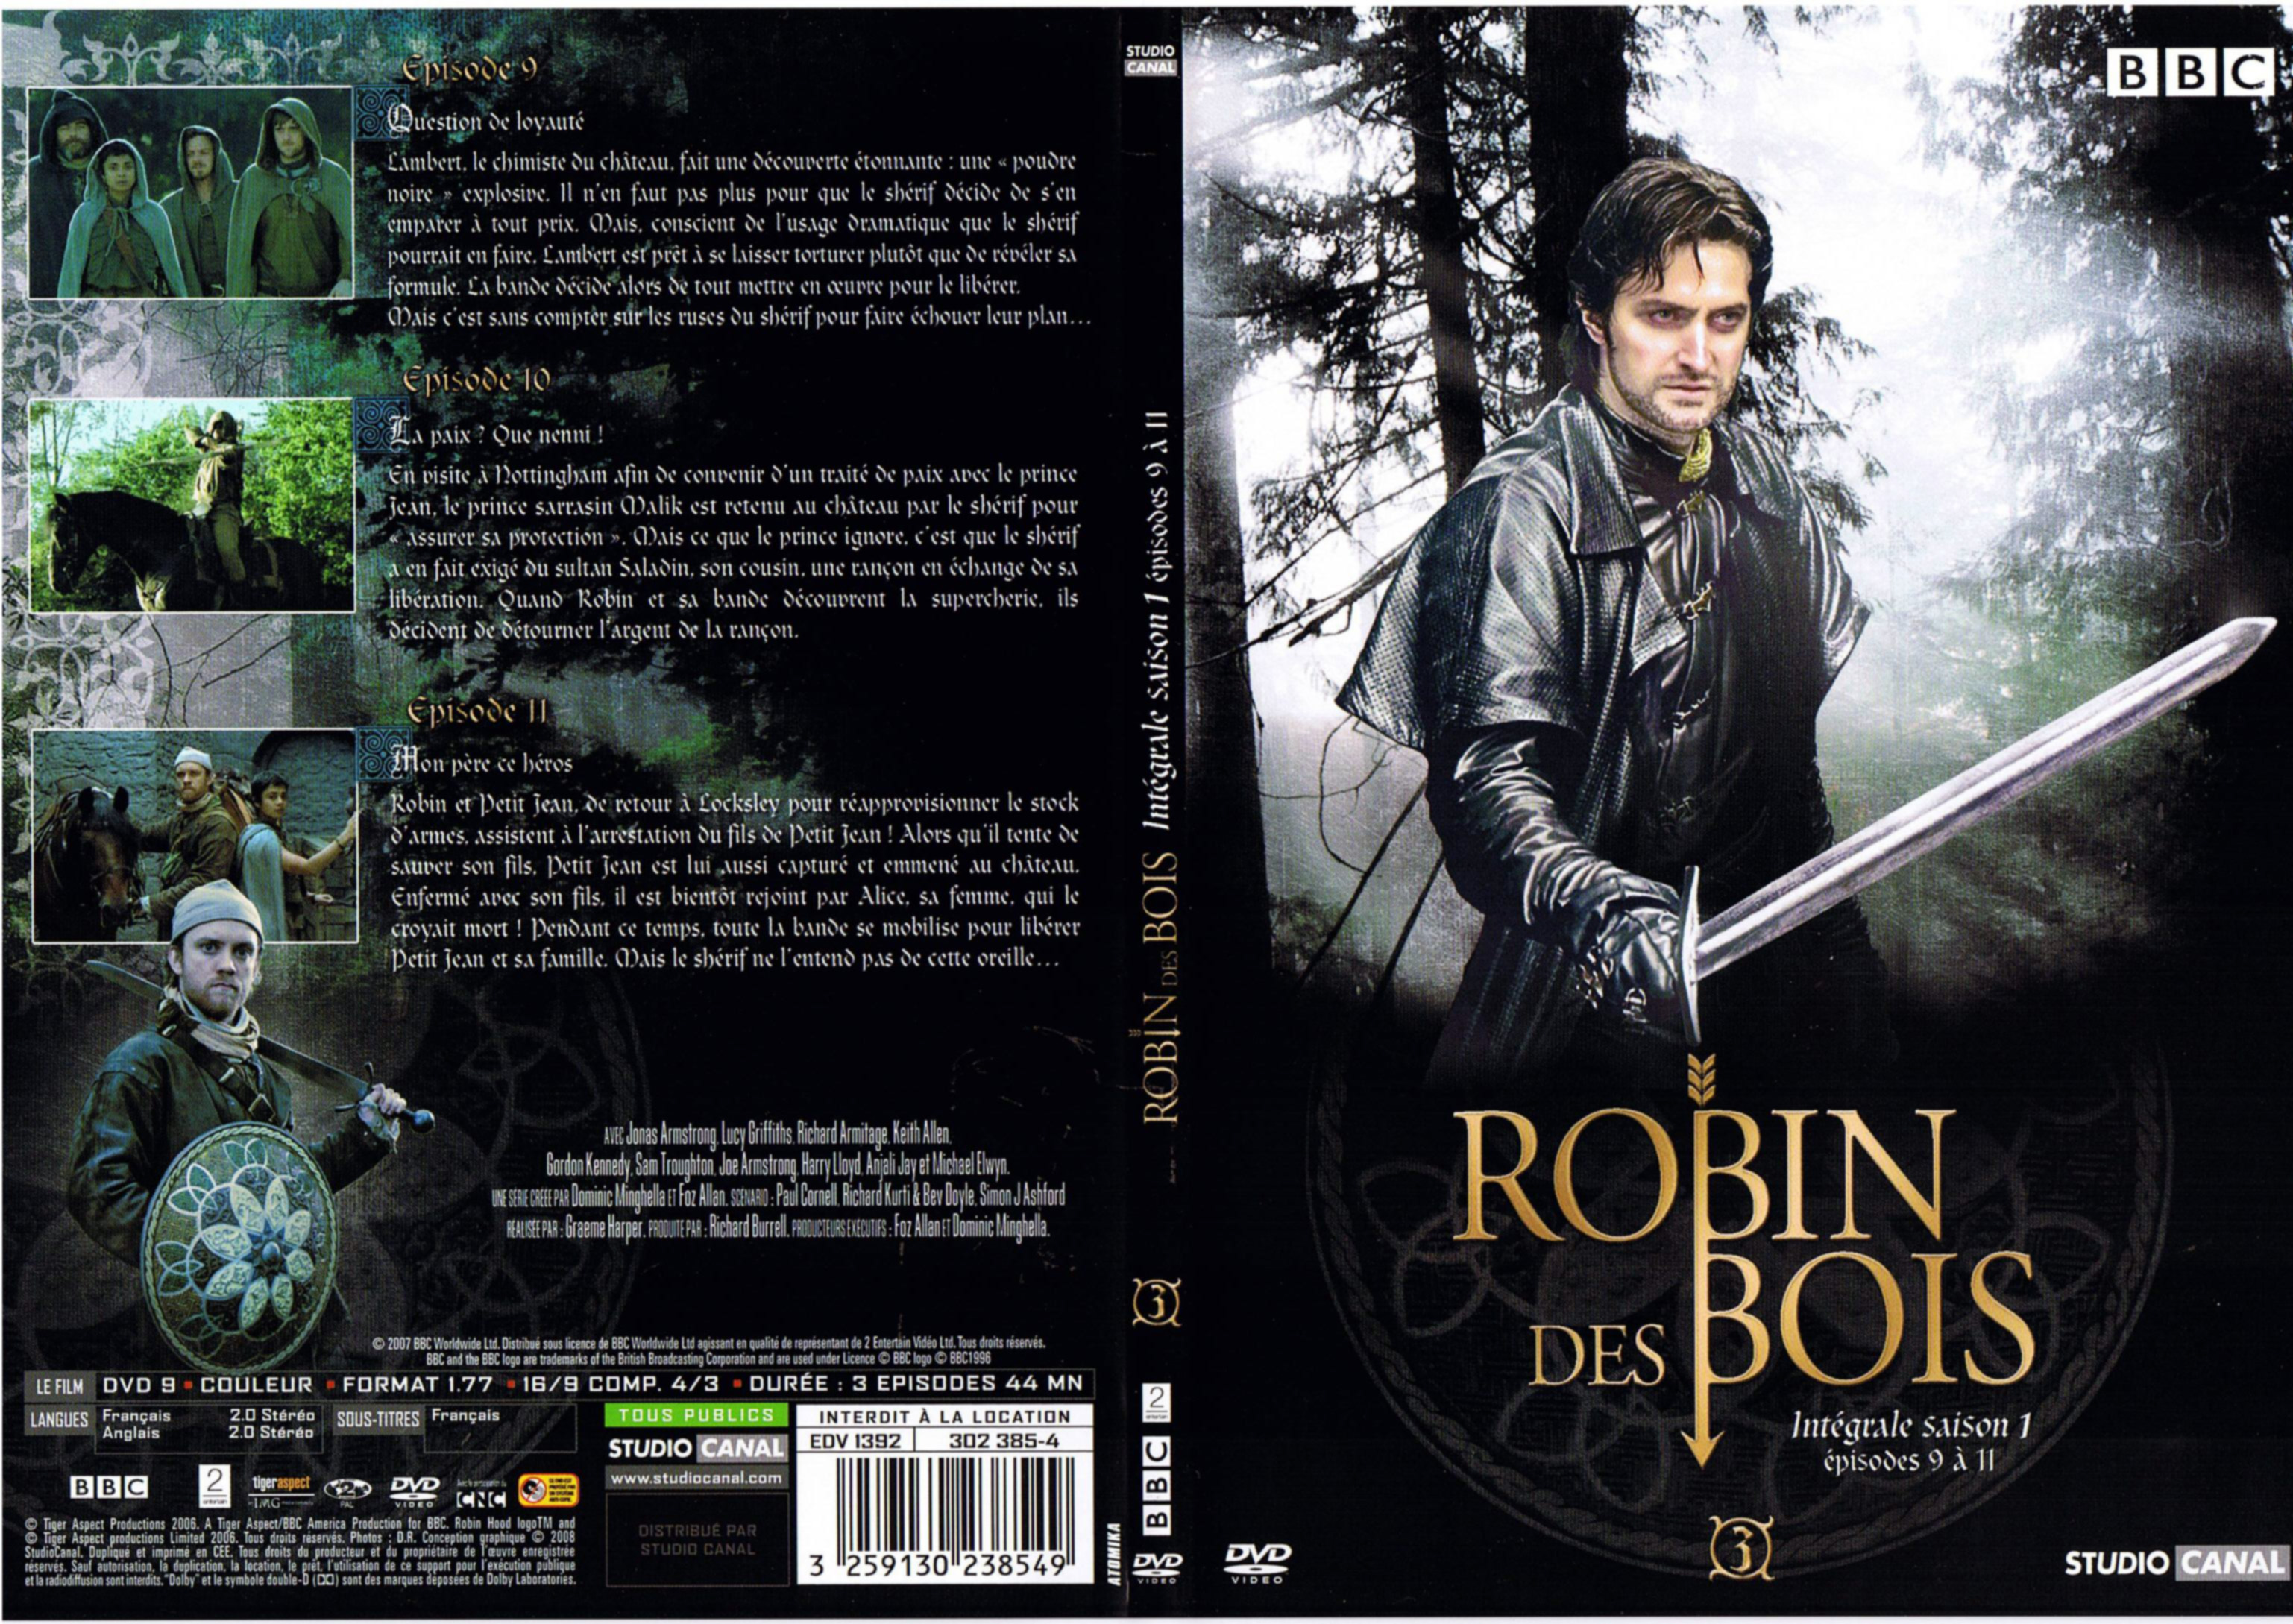 Jaquette DVD Robin des bois Saison 1 DVD 3